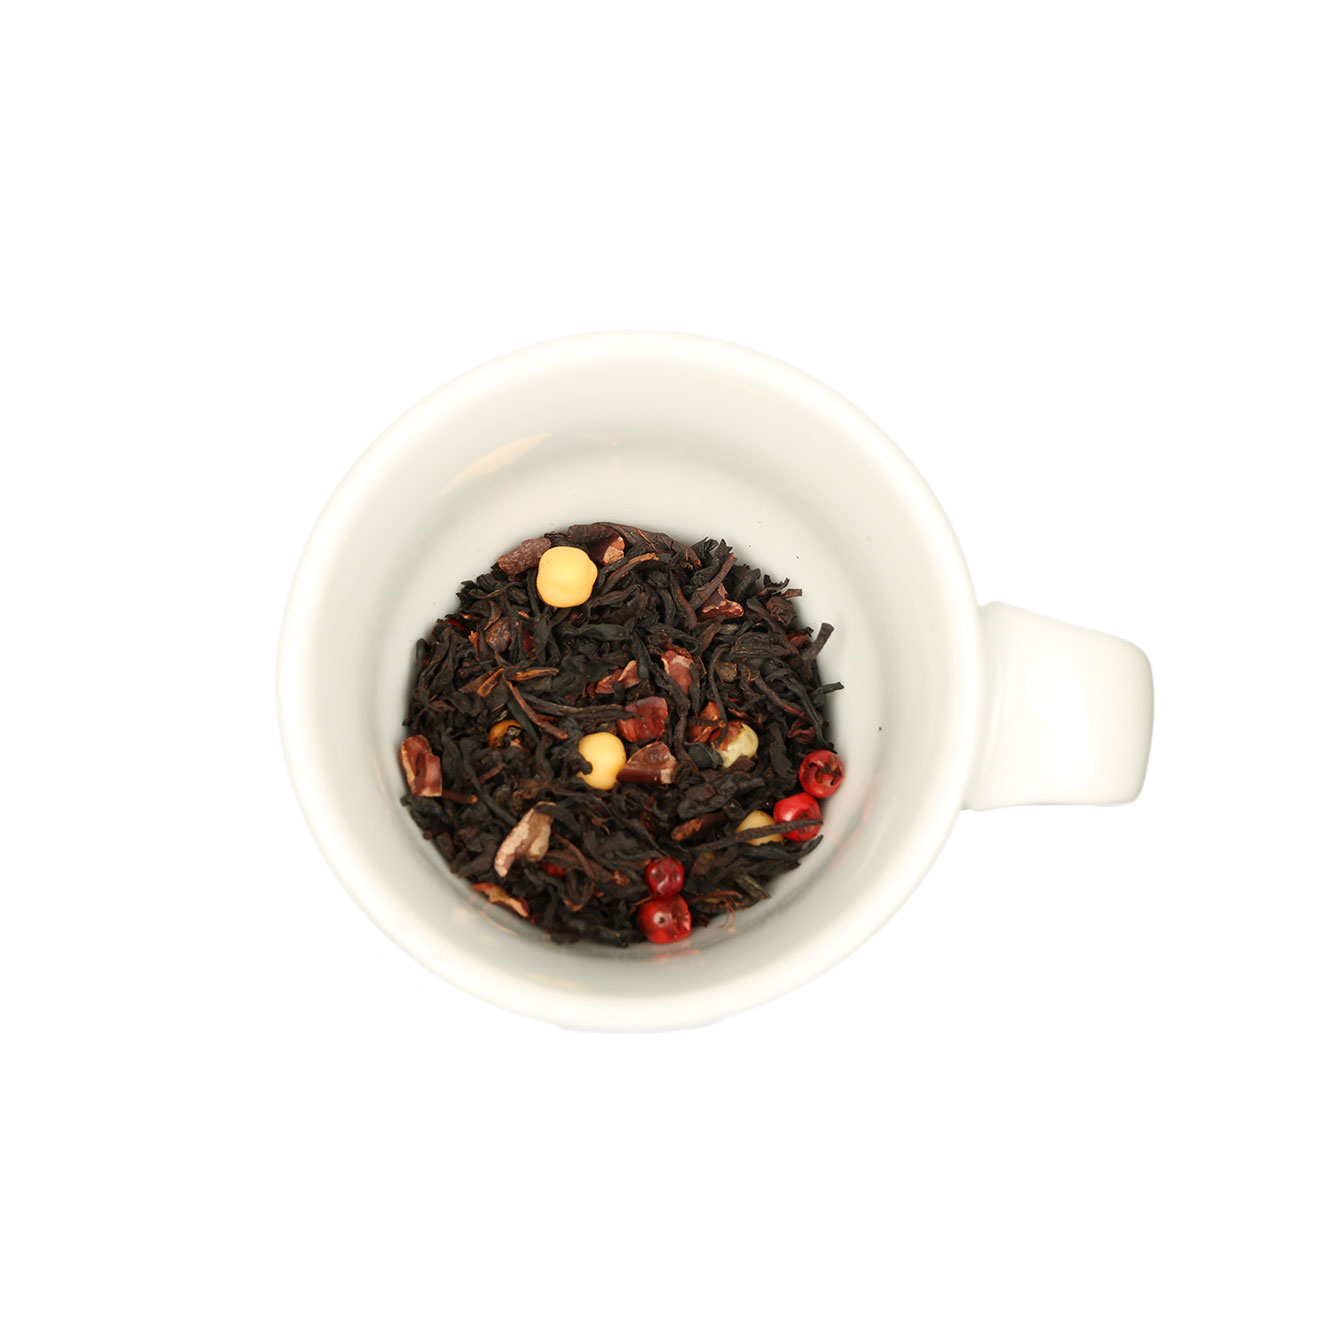 Schwarzer Tee - Chili Trüffel, aromatisierte Teemischung